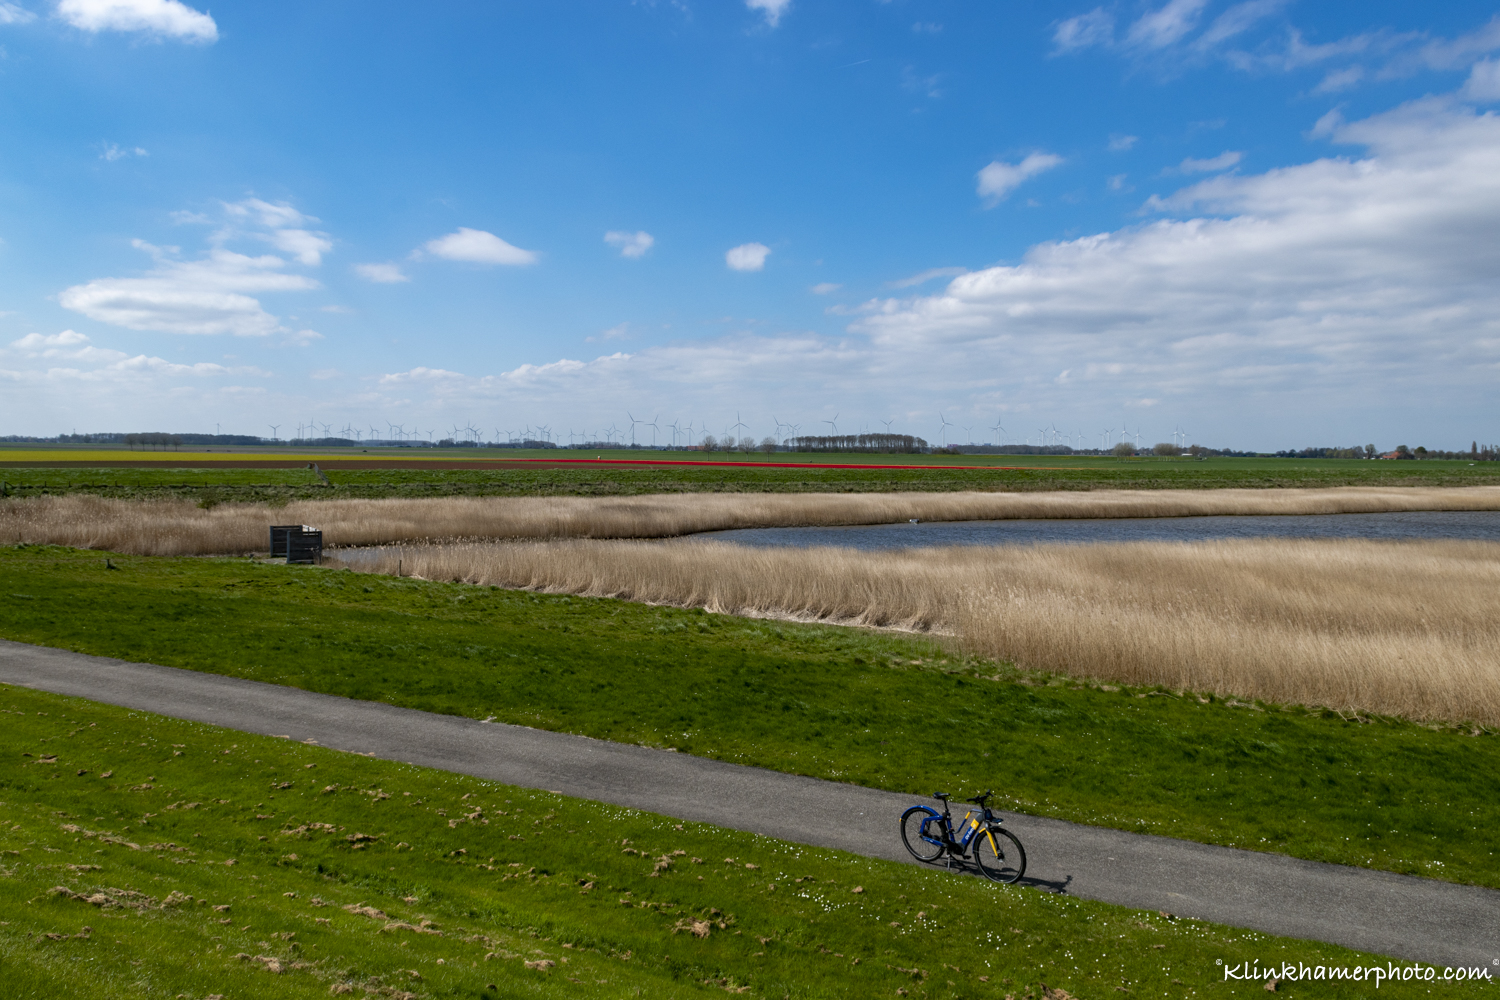 Ov fiets NS in Groningen landschap